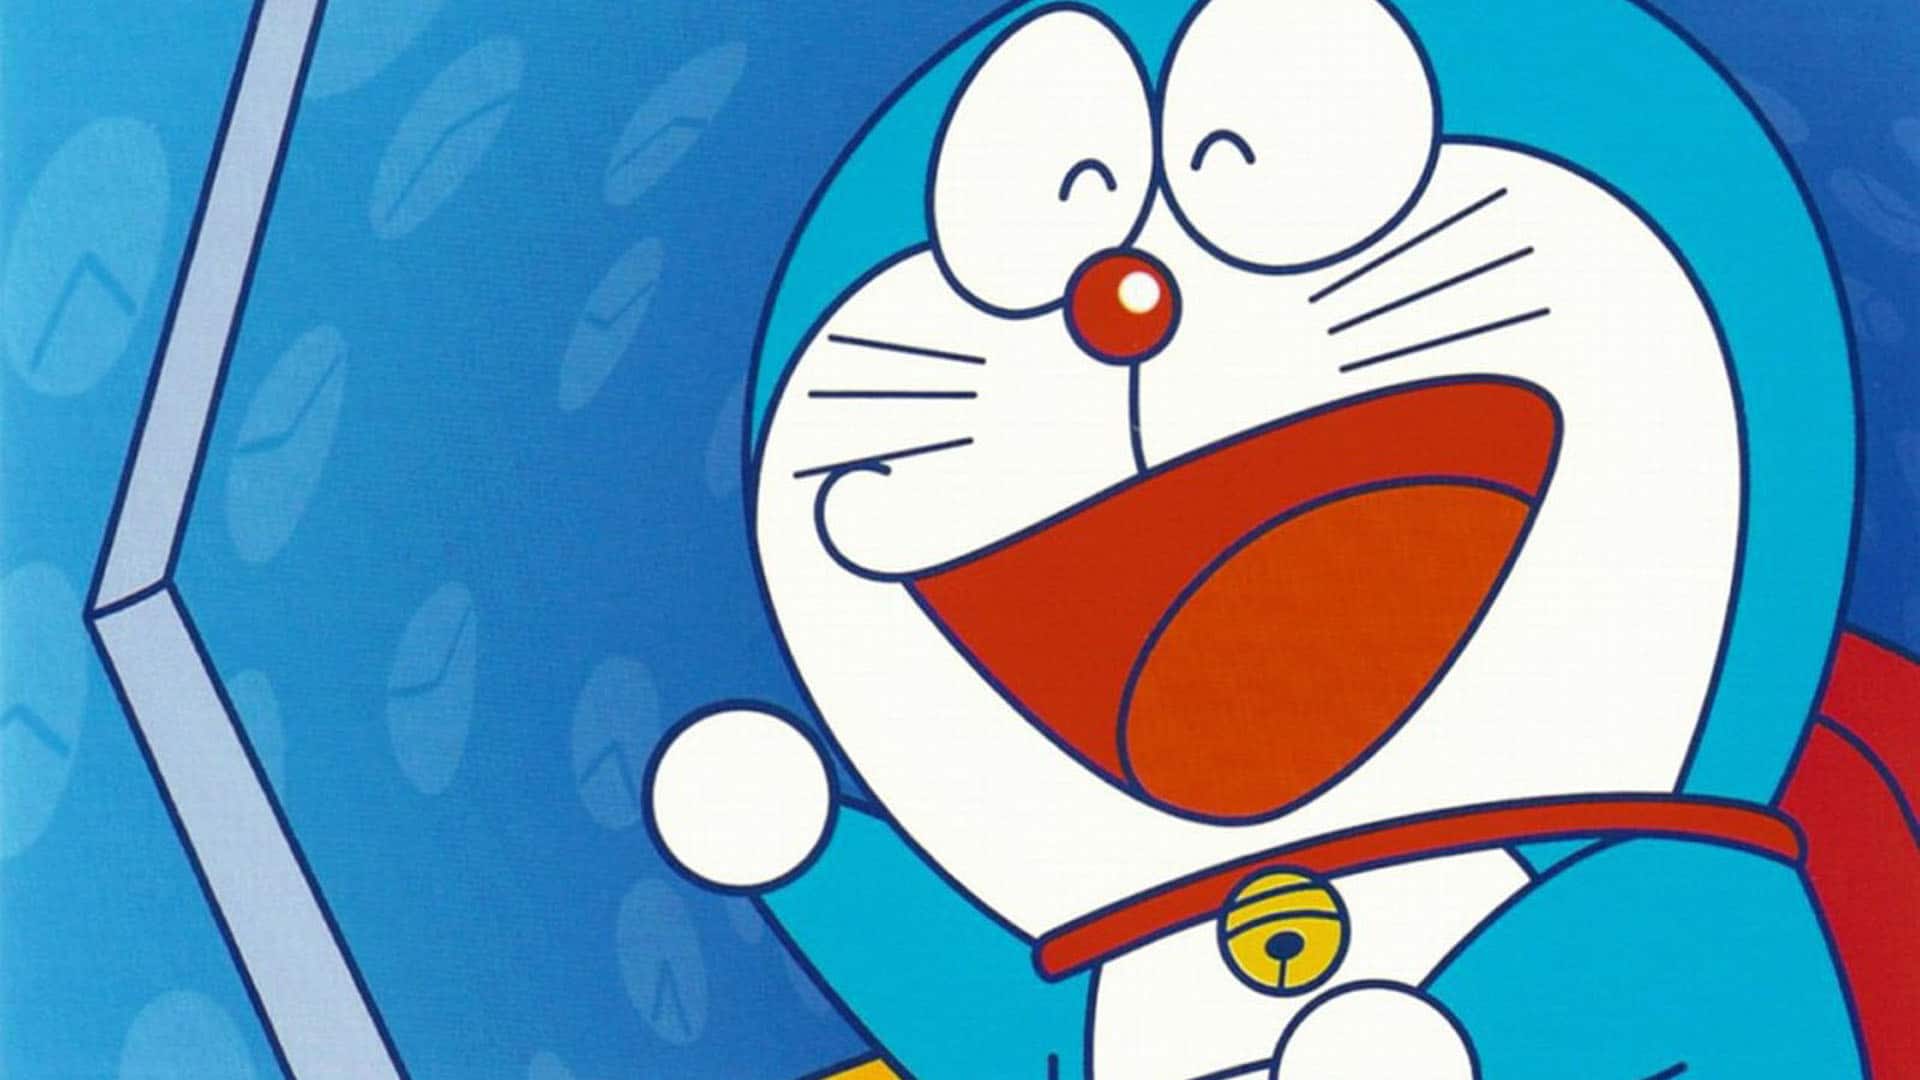 [Act.] Doraemon dará el salto a Nintendo Switch en 2019